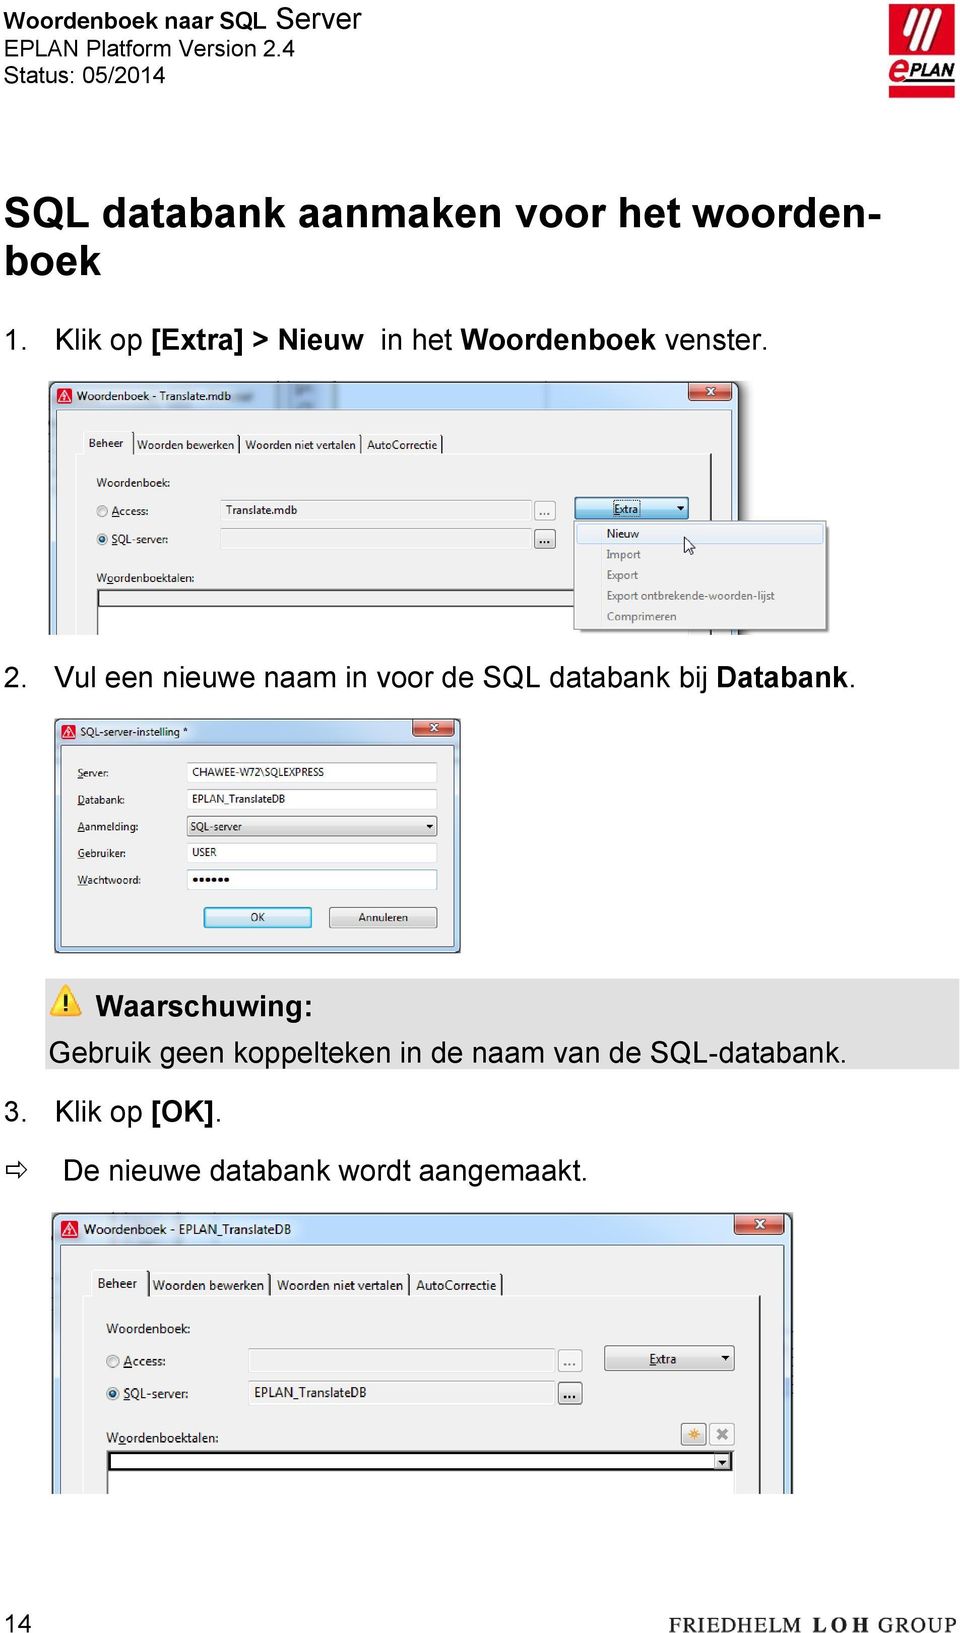 Vul een nieuwe naam in voor de SQL databank bij Databank.